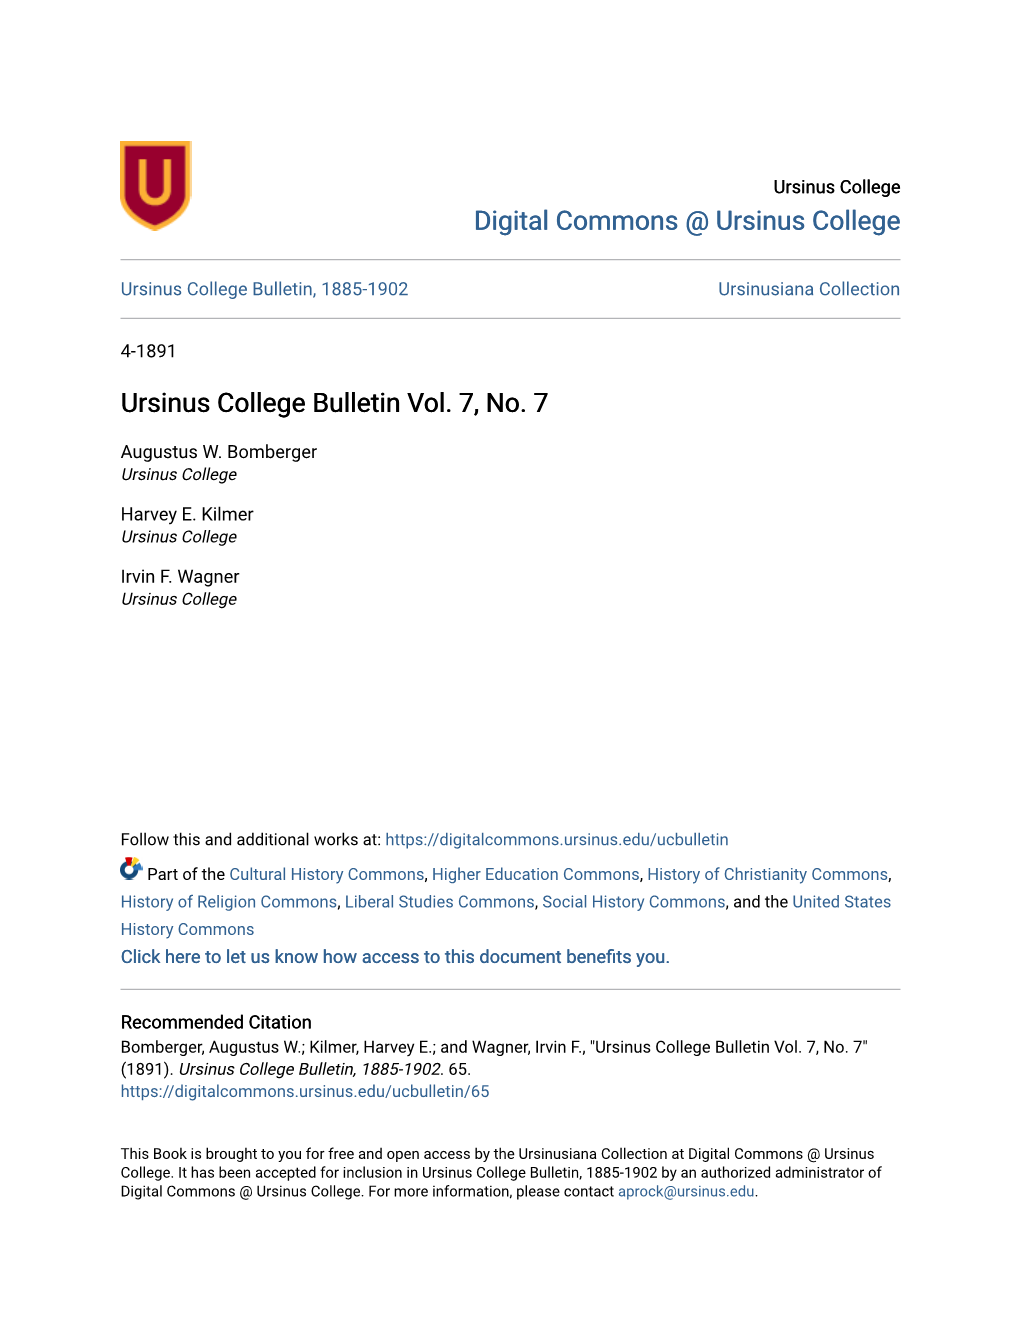 Ursinus College Bulletin Vol. 7, No. 7